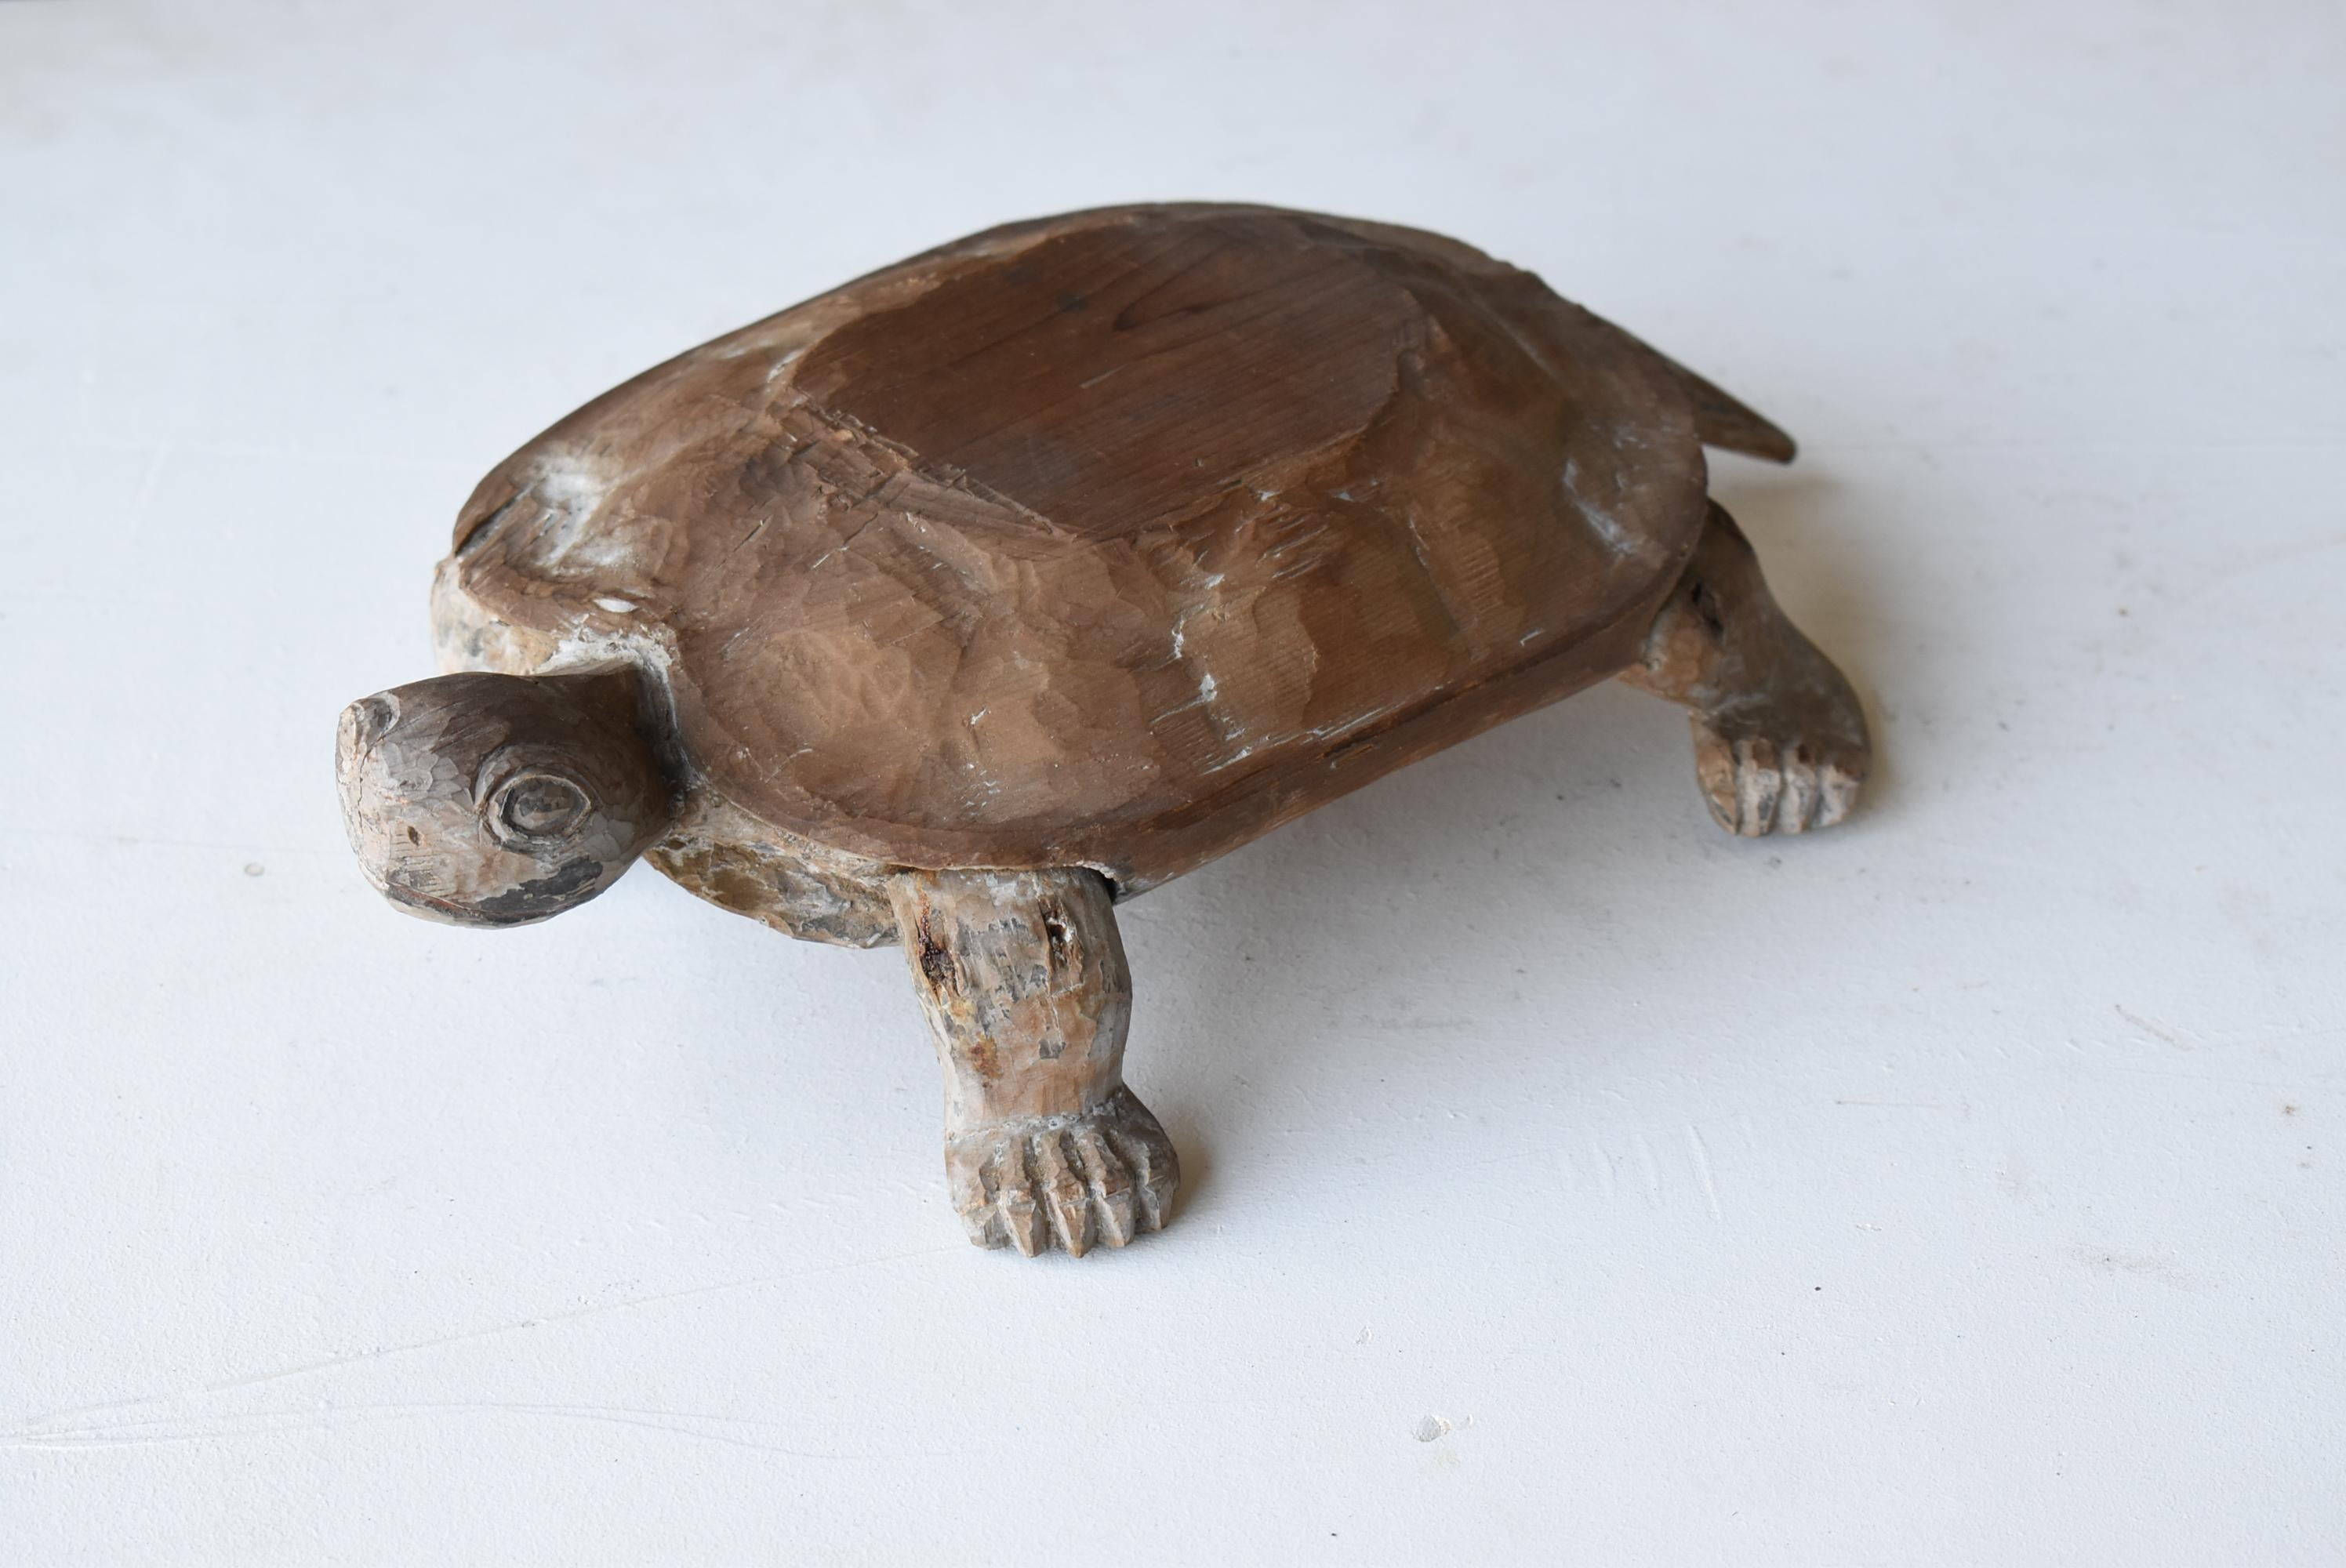 Il s'agit d'une très ancienne tortue japonaise en bois sculpté.
Cet article est de la période Edo (années 1800-1860).
Il est fabriqué en bois de cèdre.
Article très rare.

Au Japon, les tortues sont considérées comme un porte-bonheur depuis les